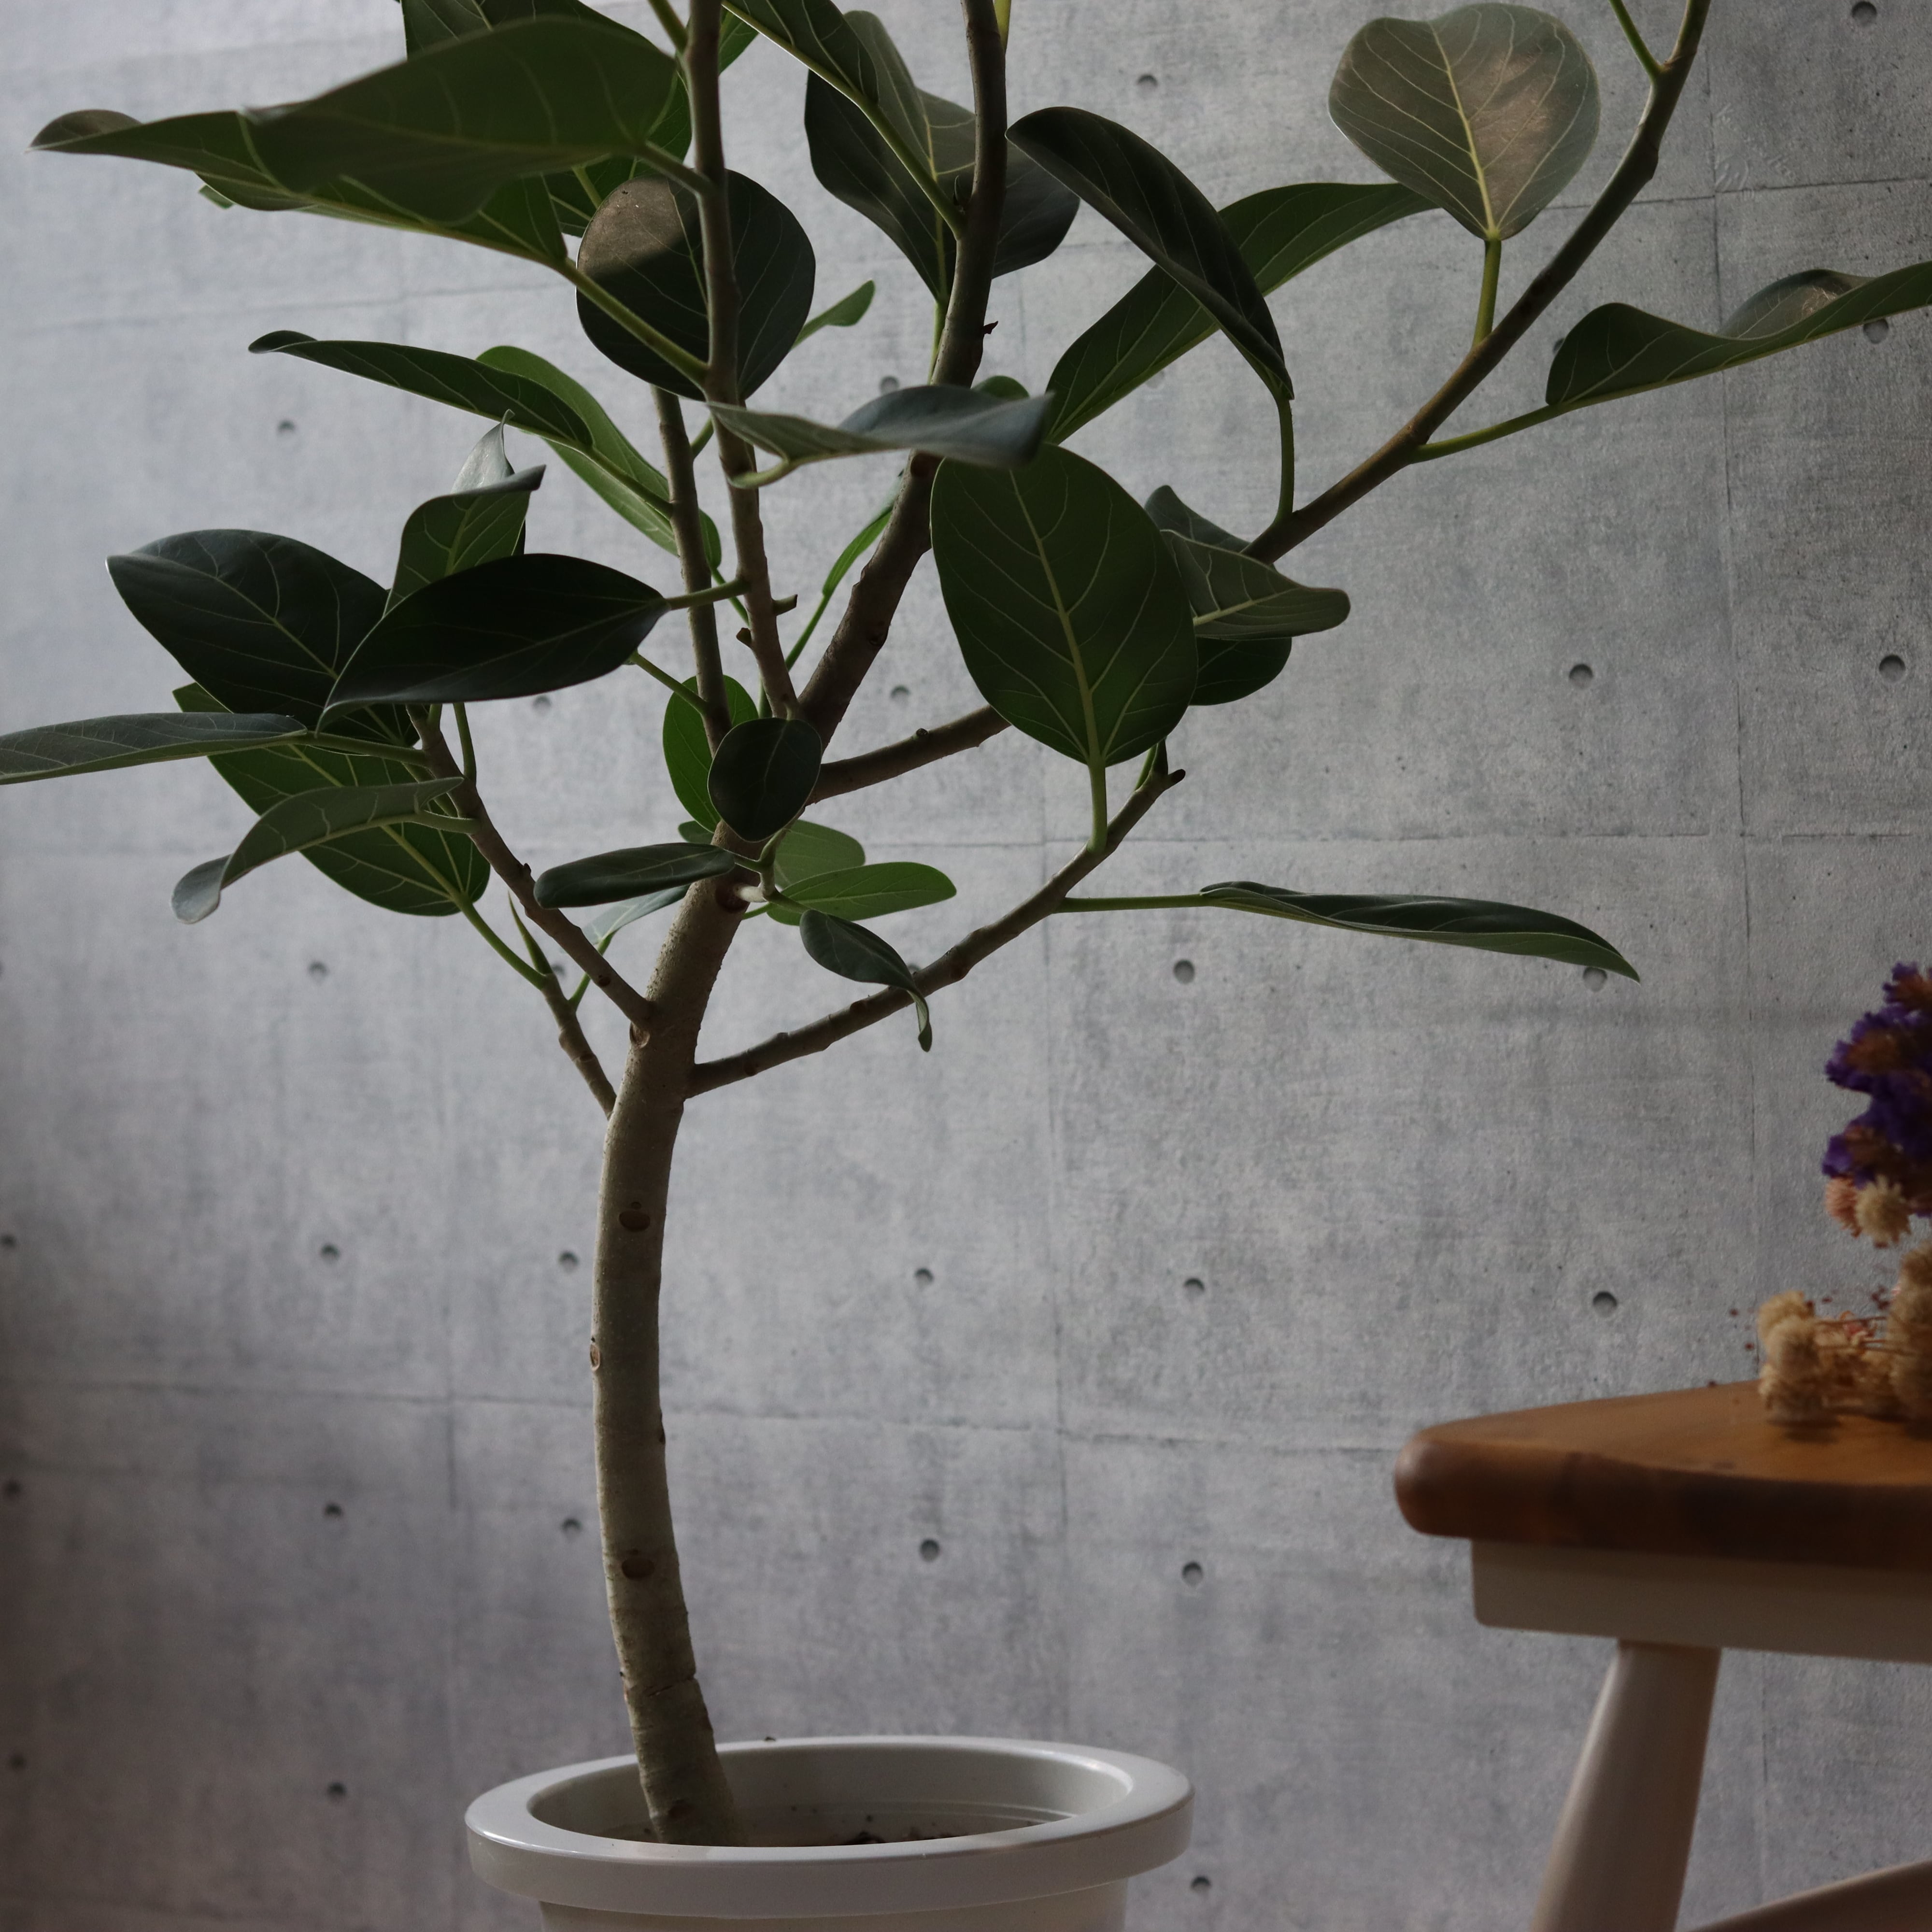 【大型魅力美形◎】 フィカス ベンガレンシス 曲がり仕立て 観葉植物 室内 大型